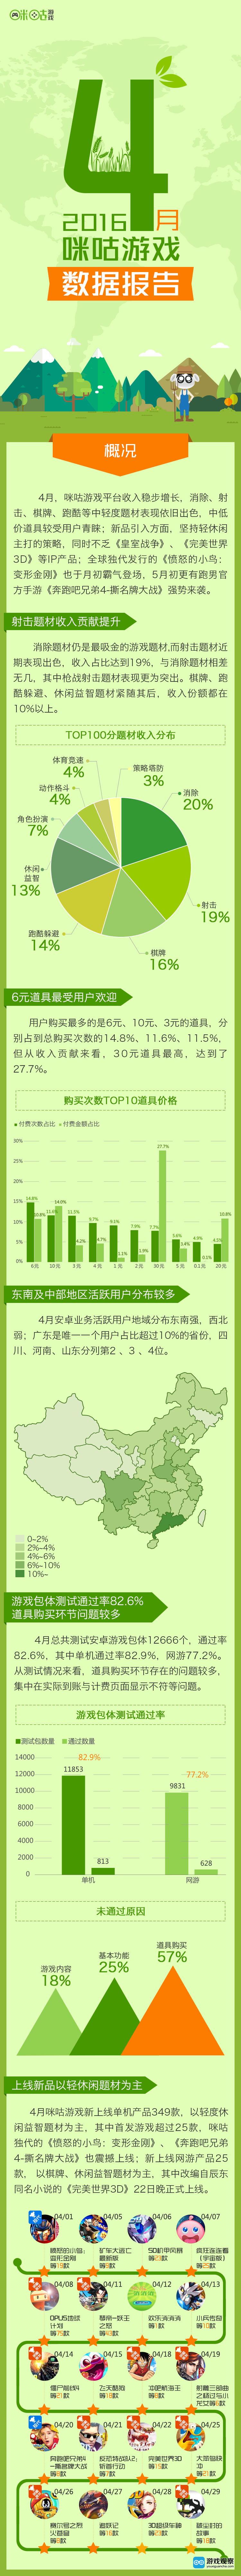 中国移动咪咕游戏日前发布了2016年4月手游数据报告